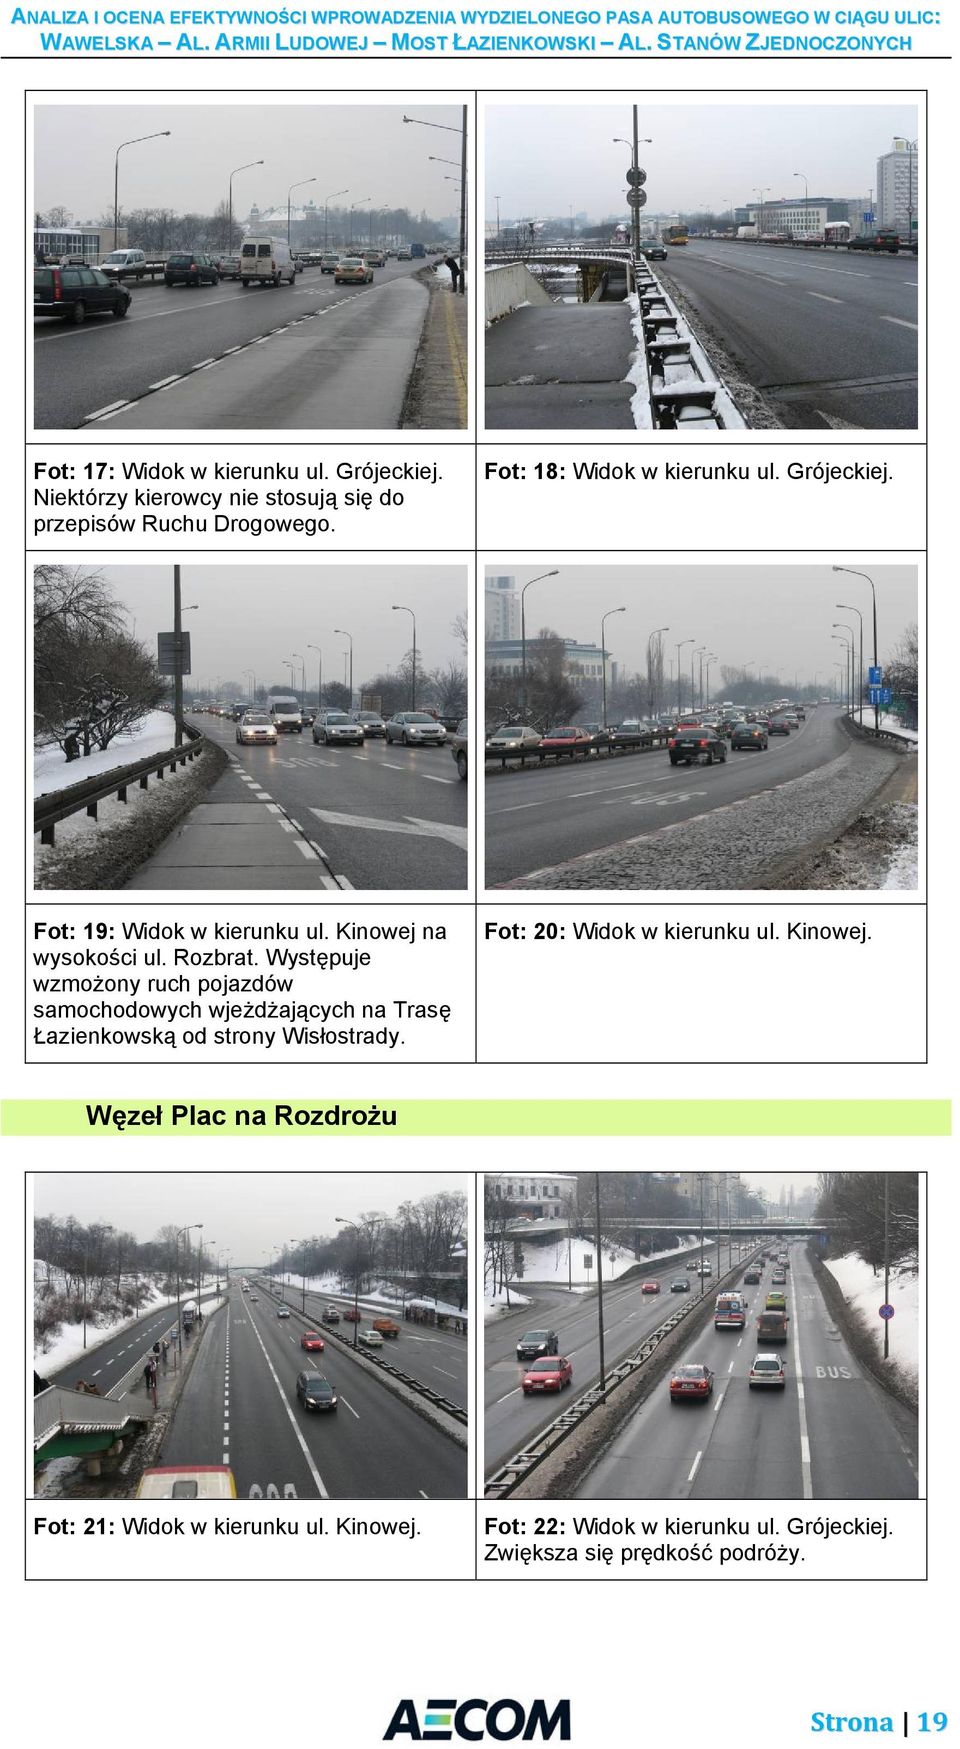 Występuje wzmożony ruch pojazdów samochodowych wjeżdżających na Trasę Łazienkowską od strony Wisłostrady.